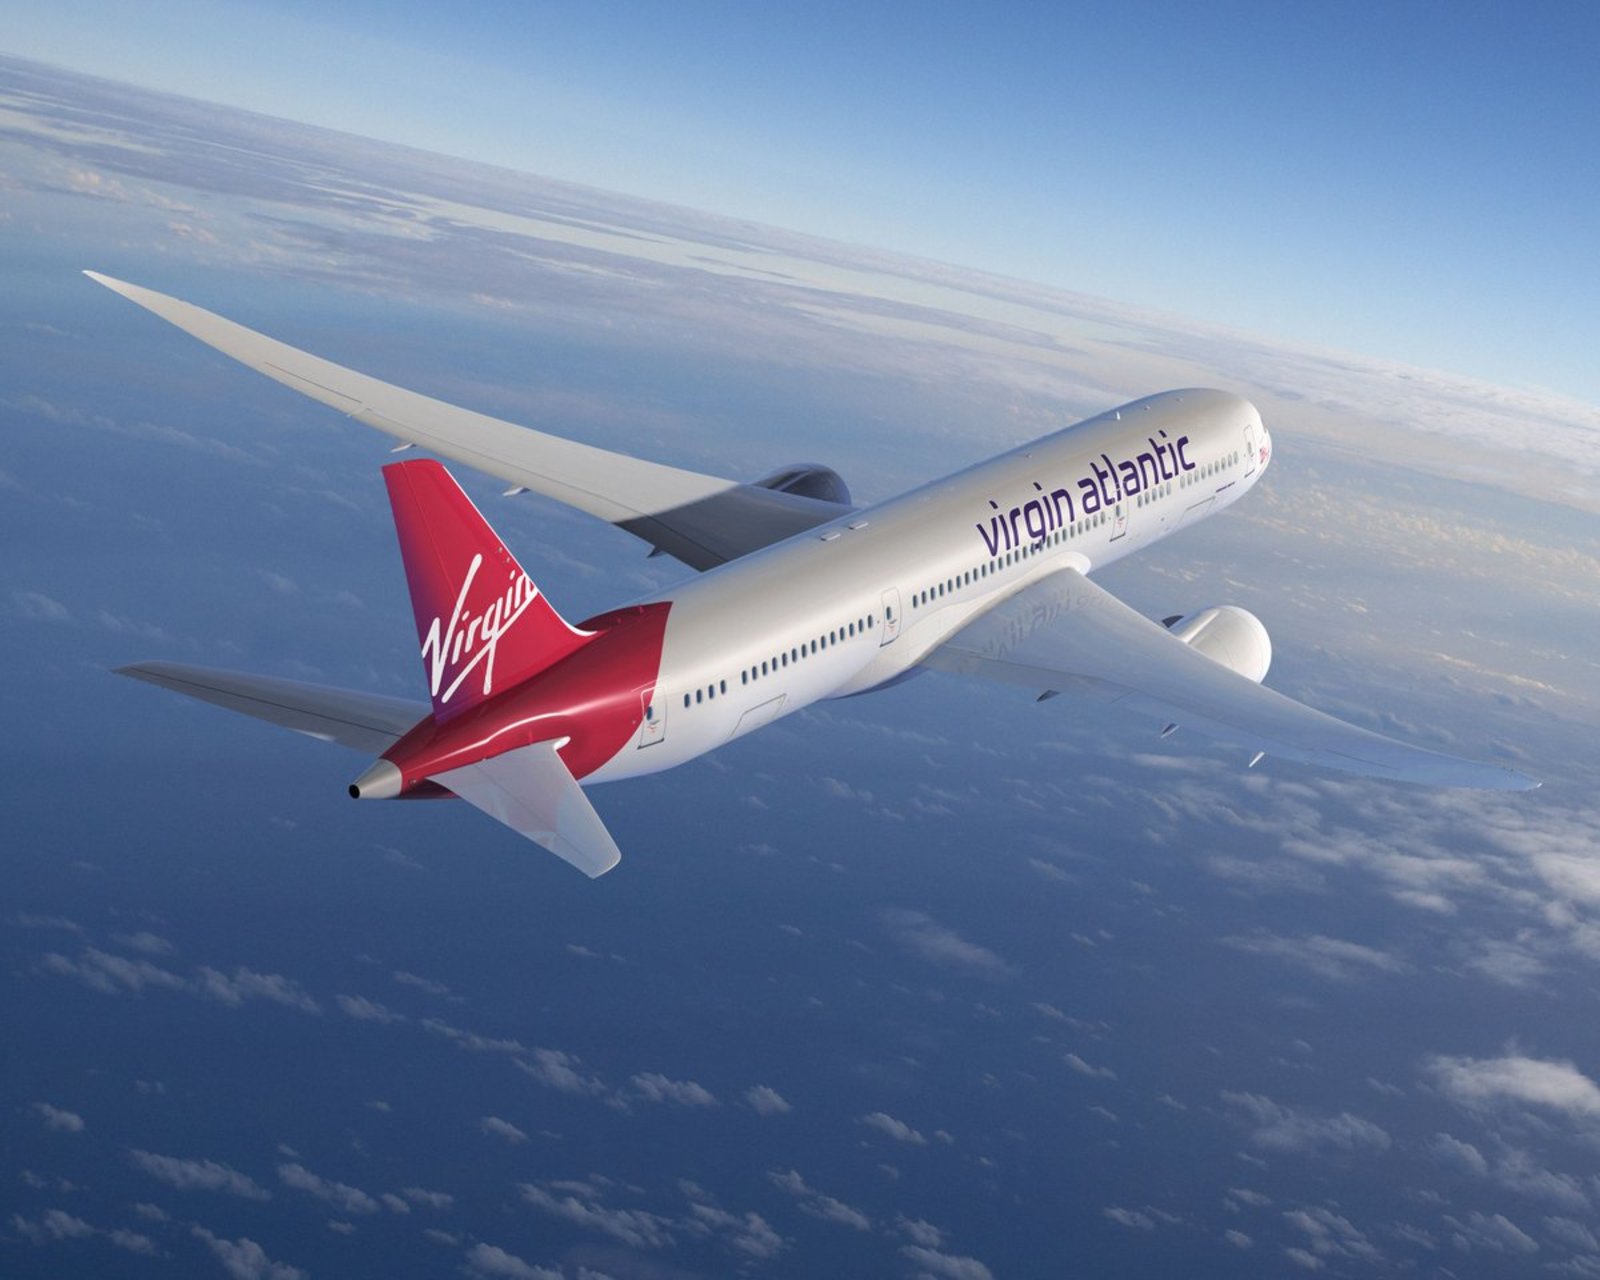 Virgin Atlantic rompe barrera del sonido